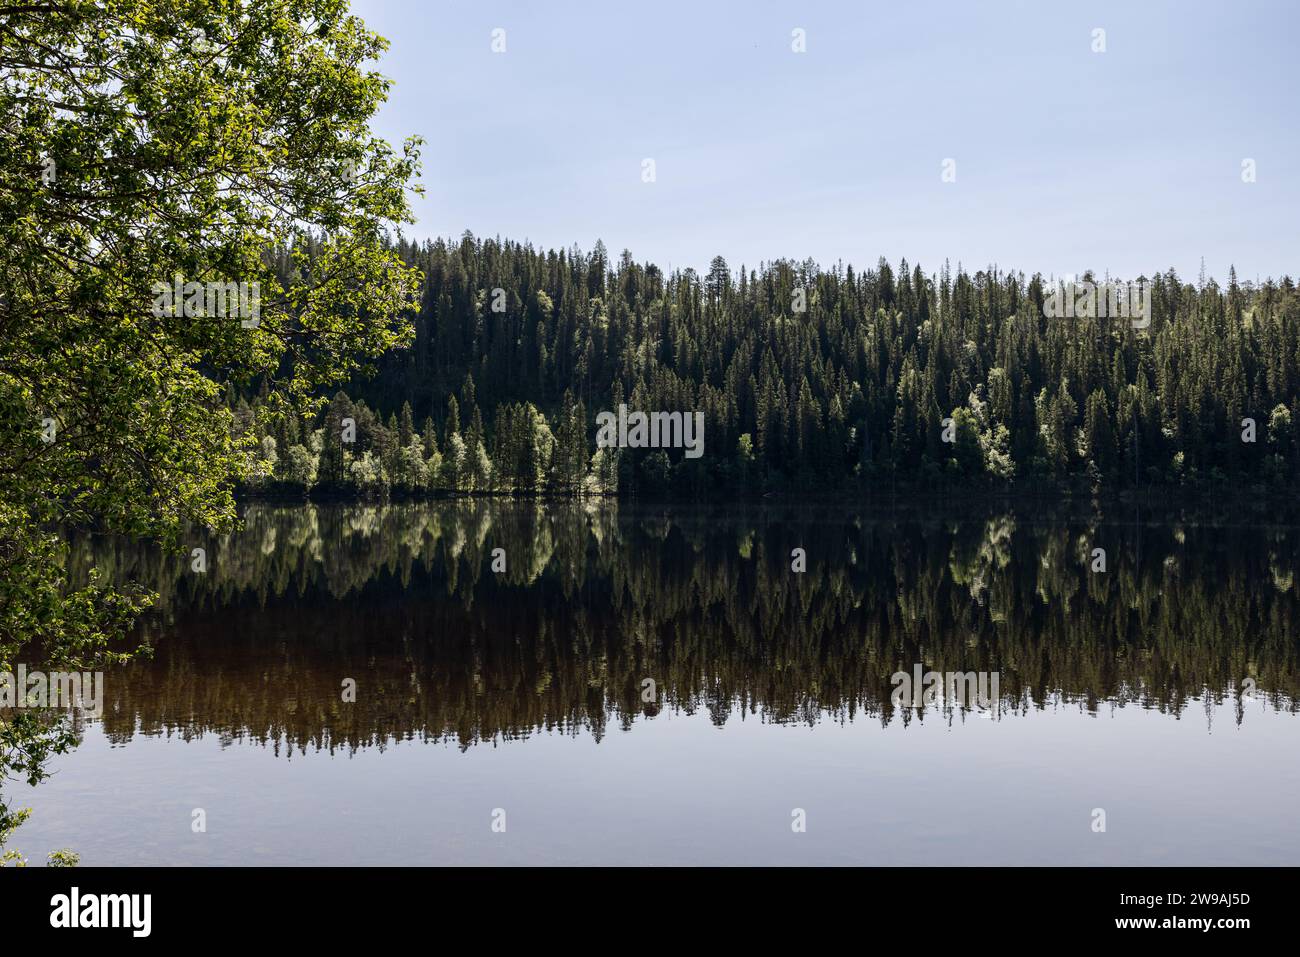 Vista panoramica estiva di Snasavatnet a Steinkjer, Norvegia, dove le densamente boscose sponde si riflettono splendidamente nelle calme e limpide acque del lago Foto Stock